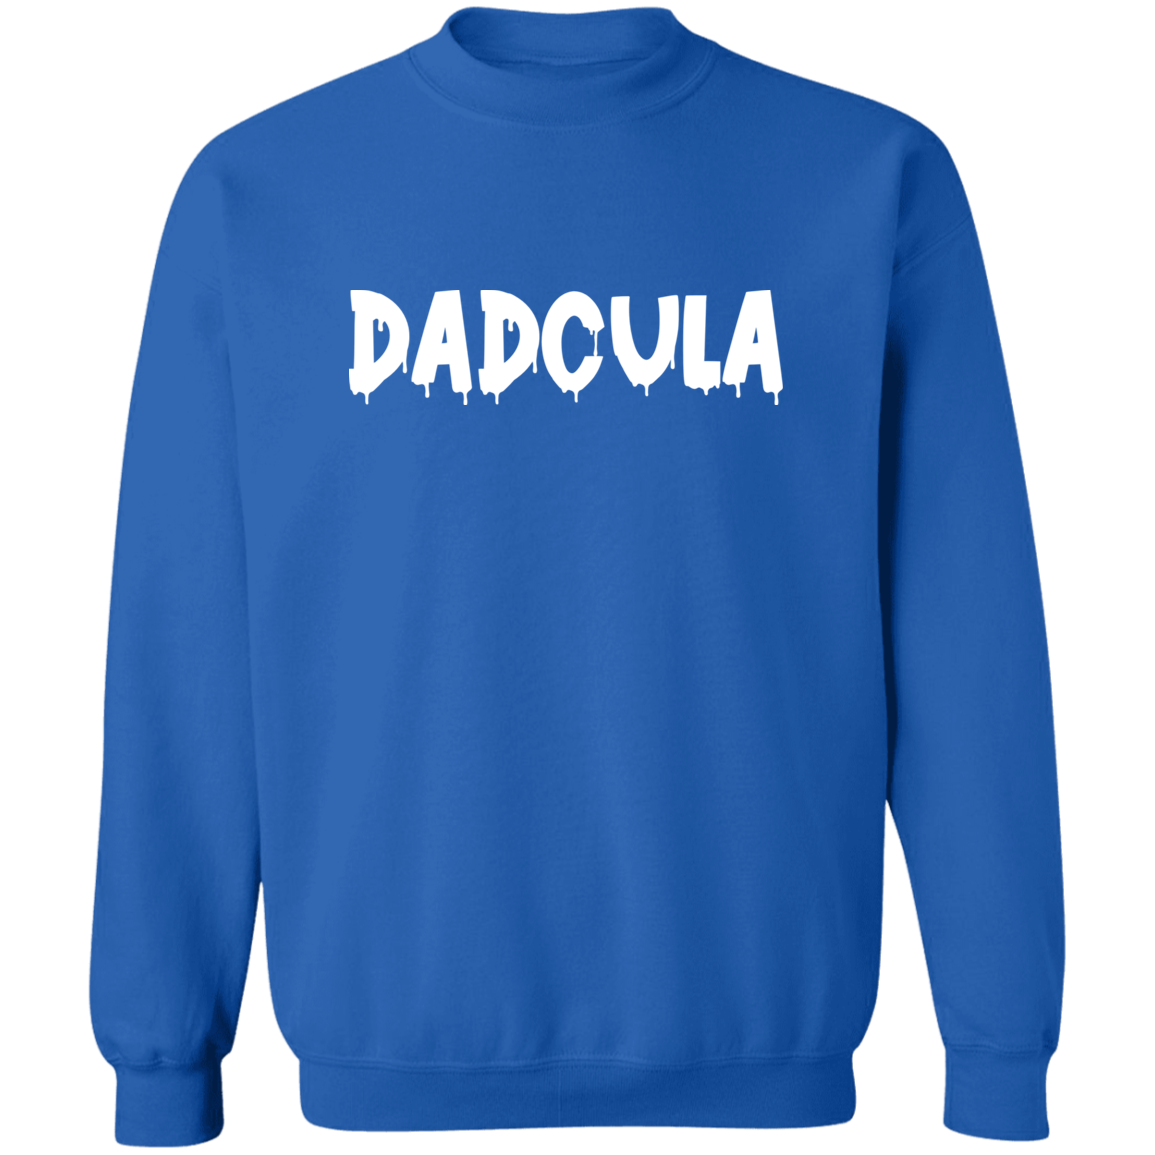 Dadcula Men's Pullover Crewneck Sweatshirt